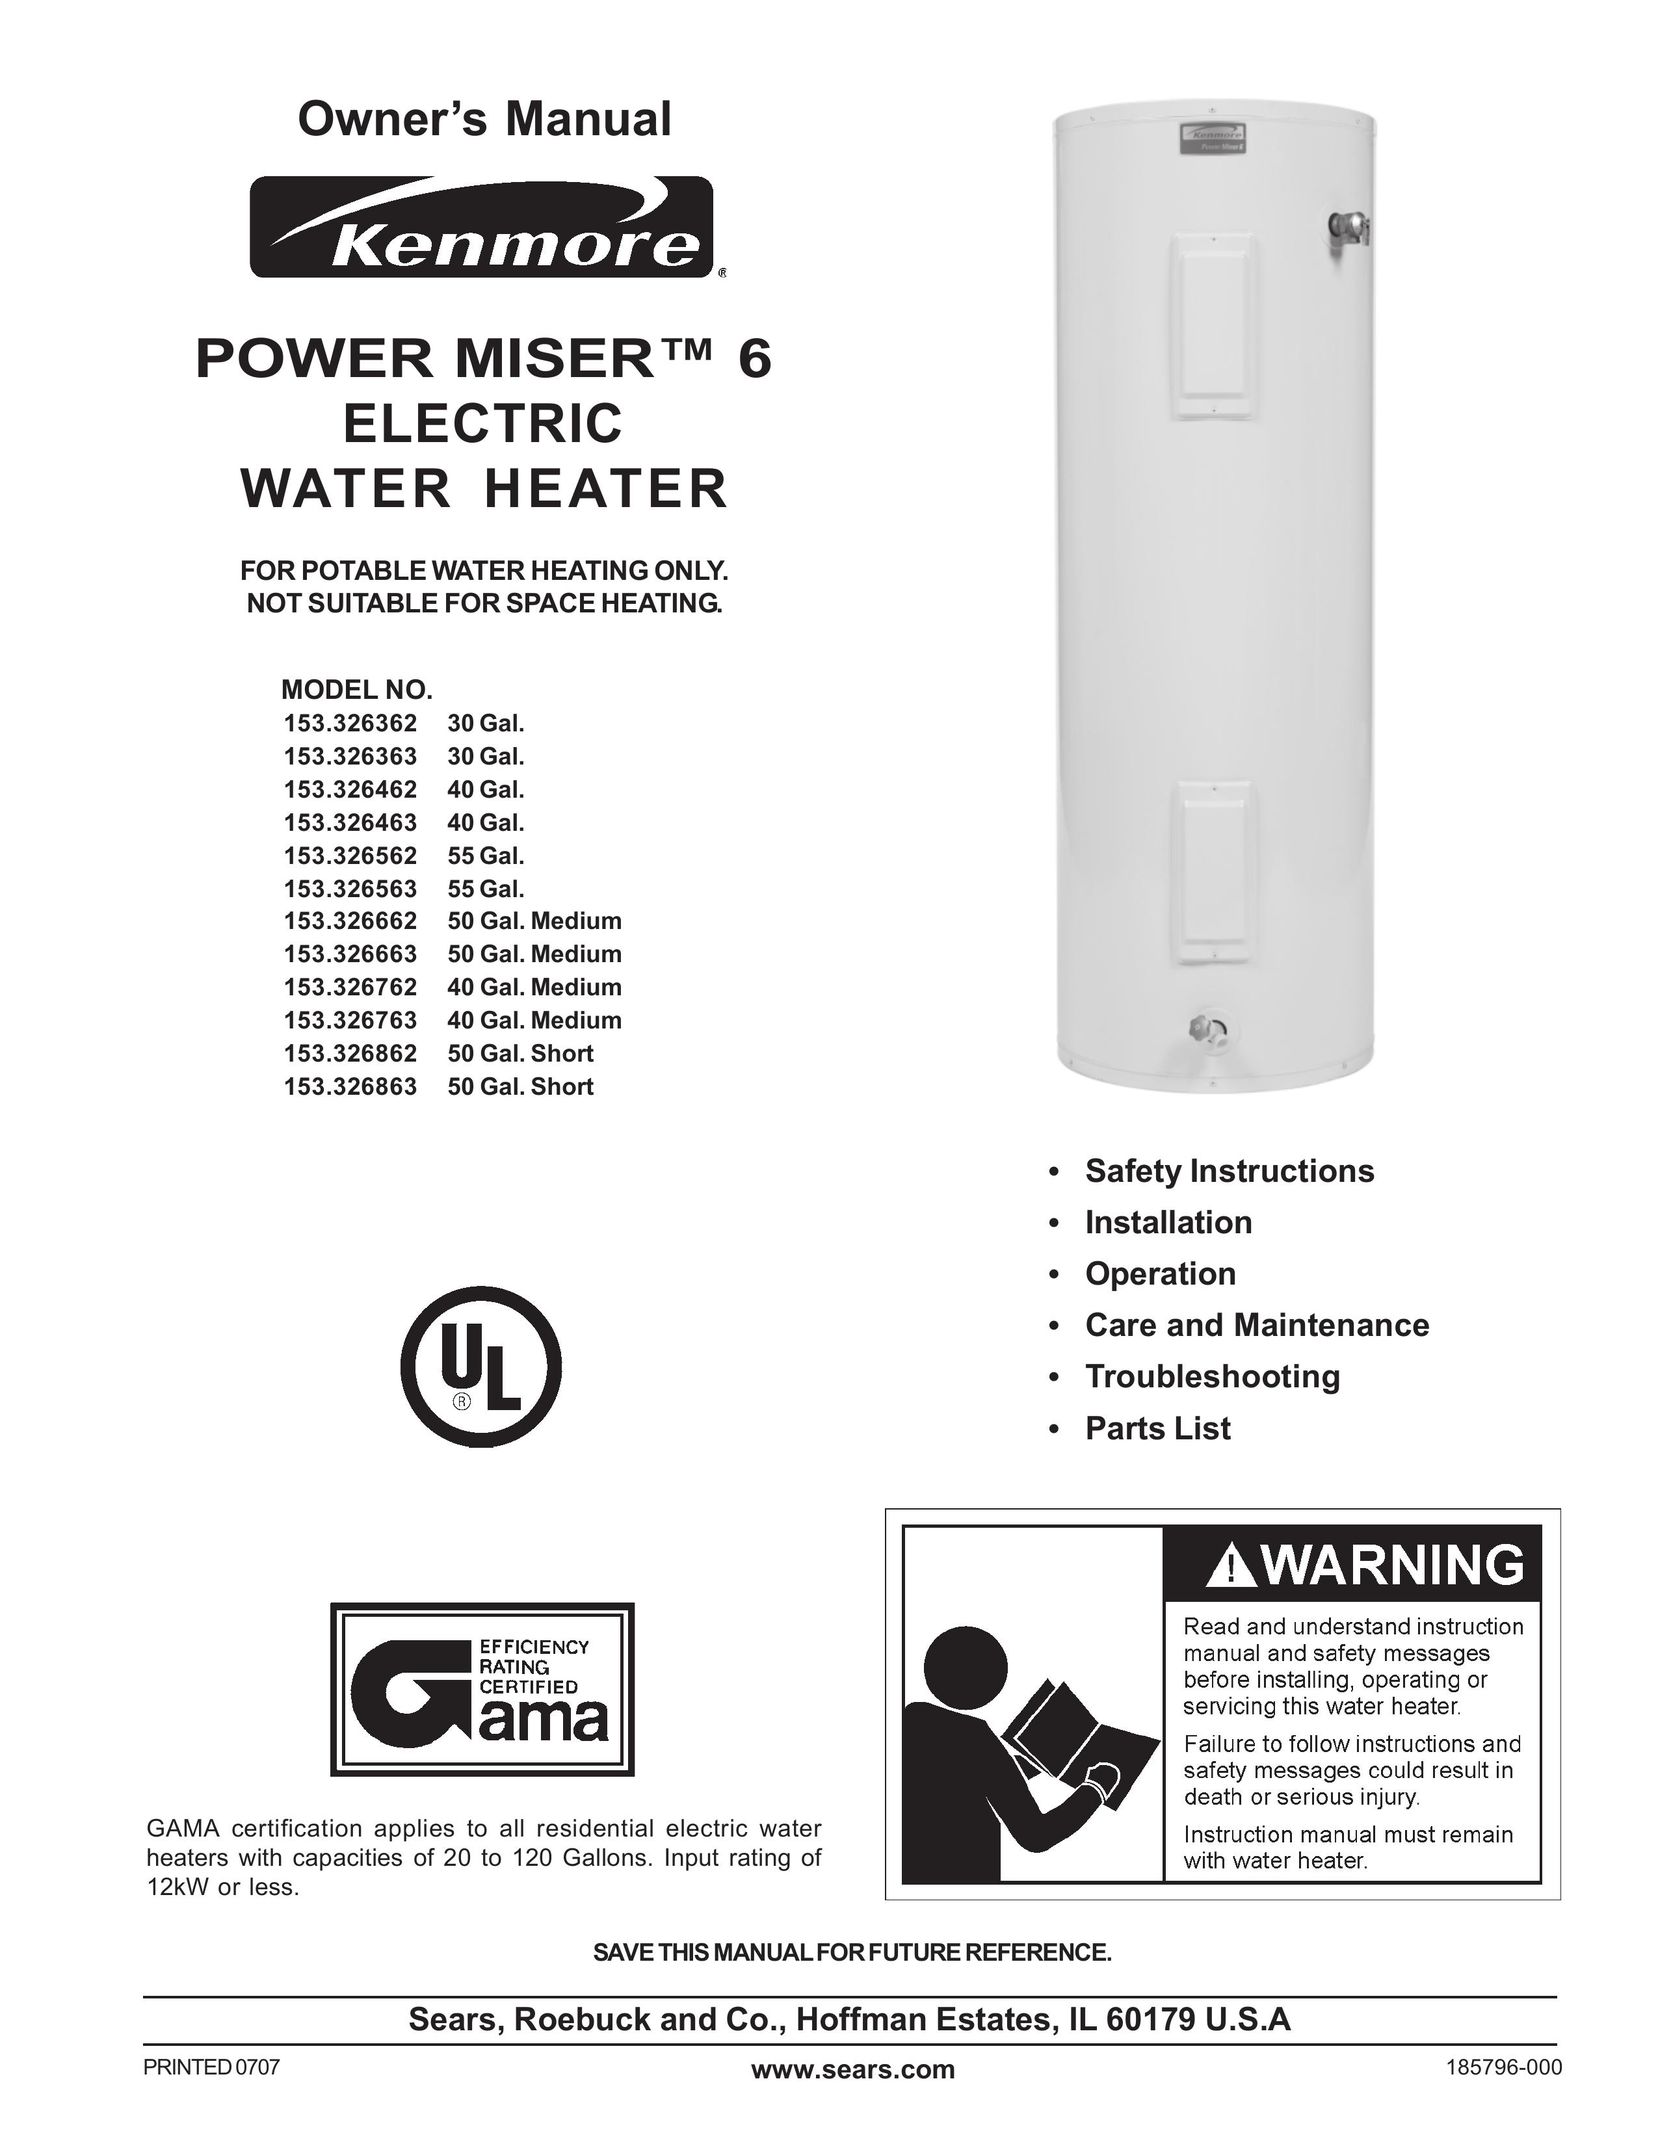 Sears 153.326663 50 GAL. MEDIUM Water Heater User Manual